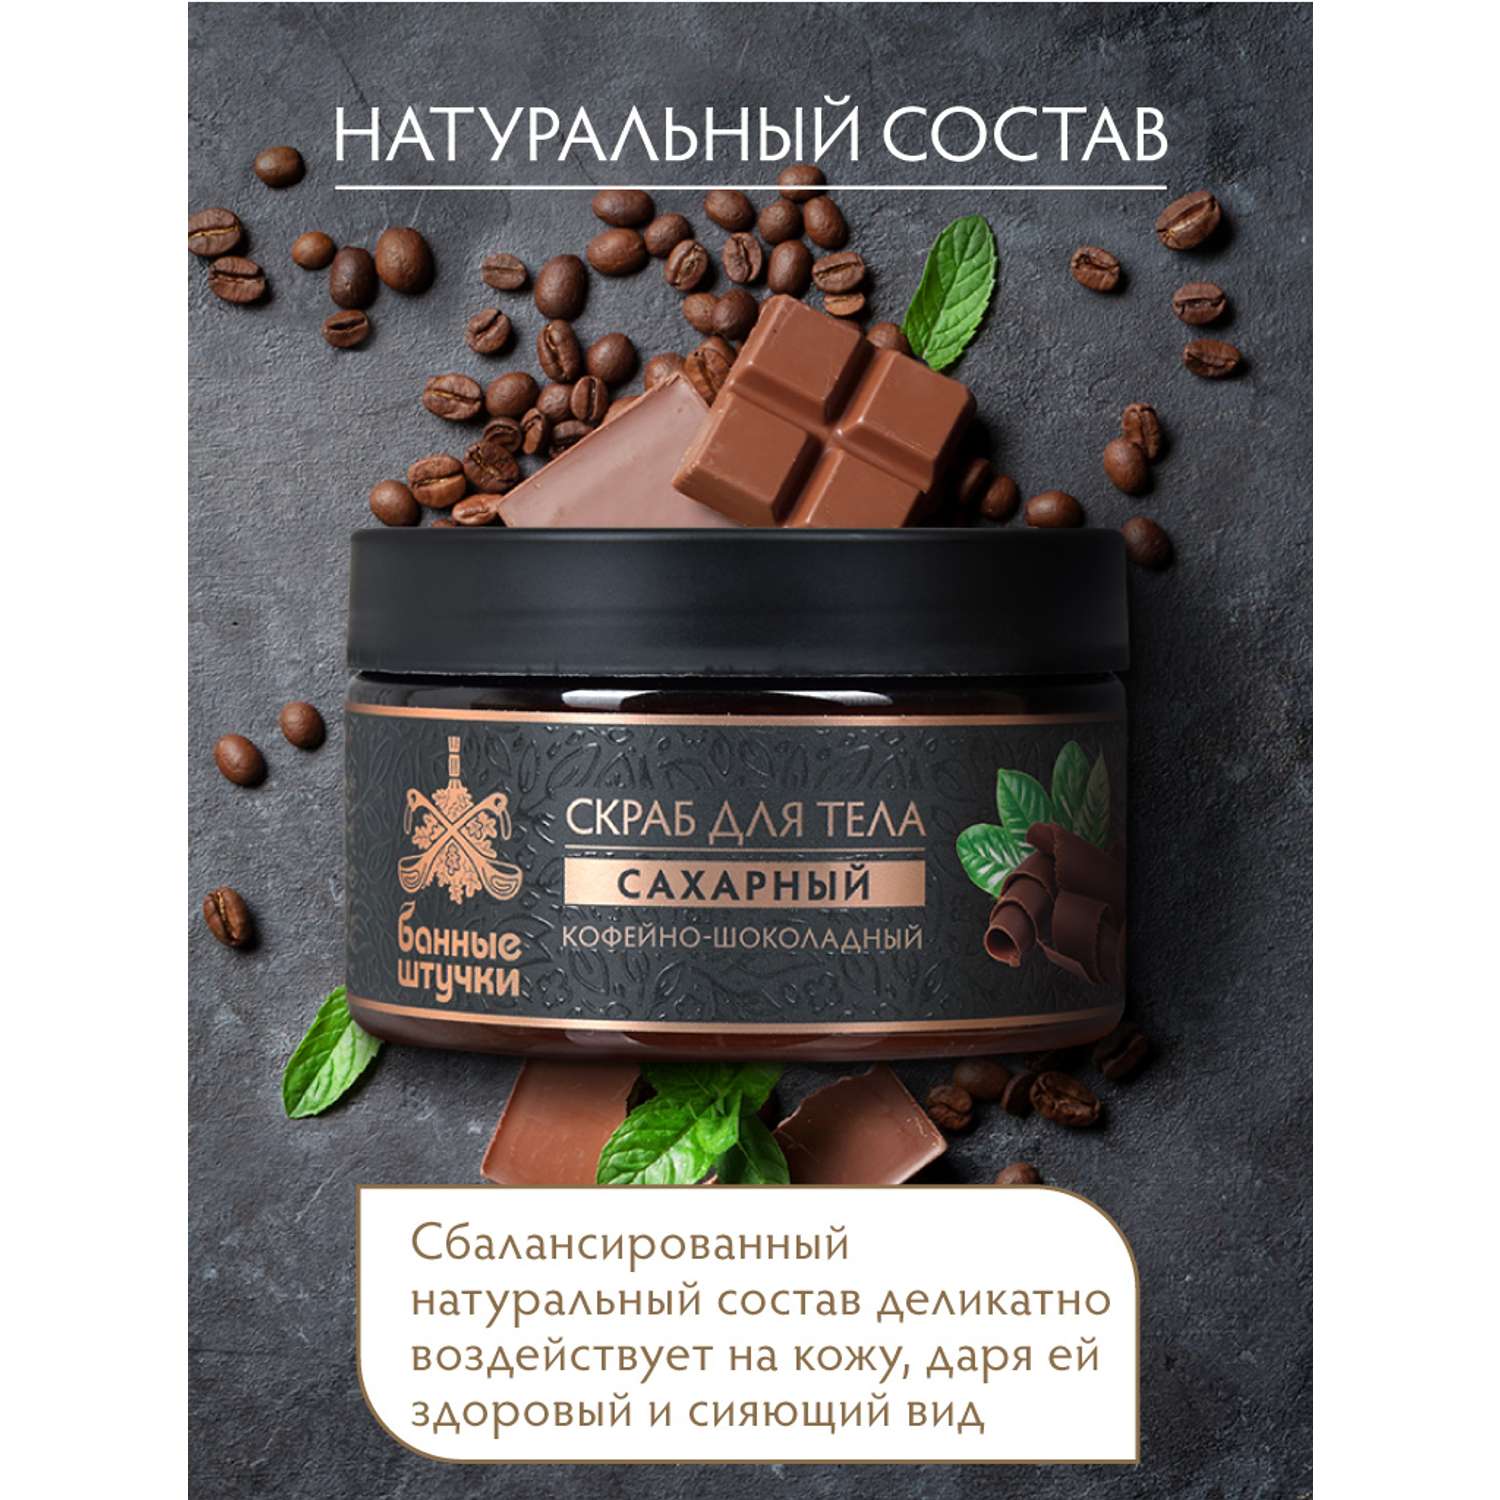 Скраб для тела сахарный Банные штучки Кофейно-шоколадный 250 мл - фото 8